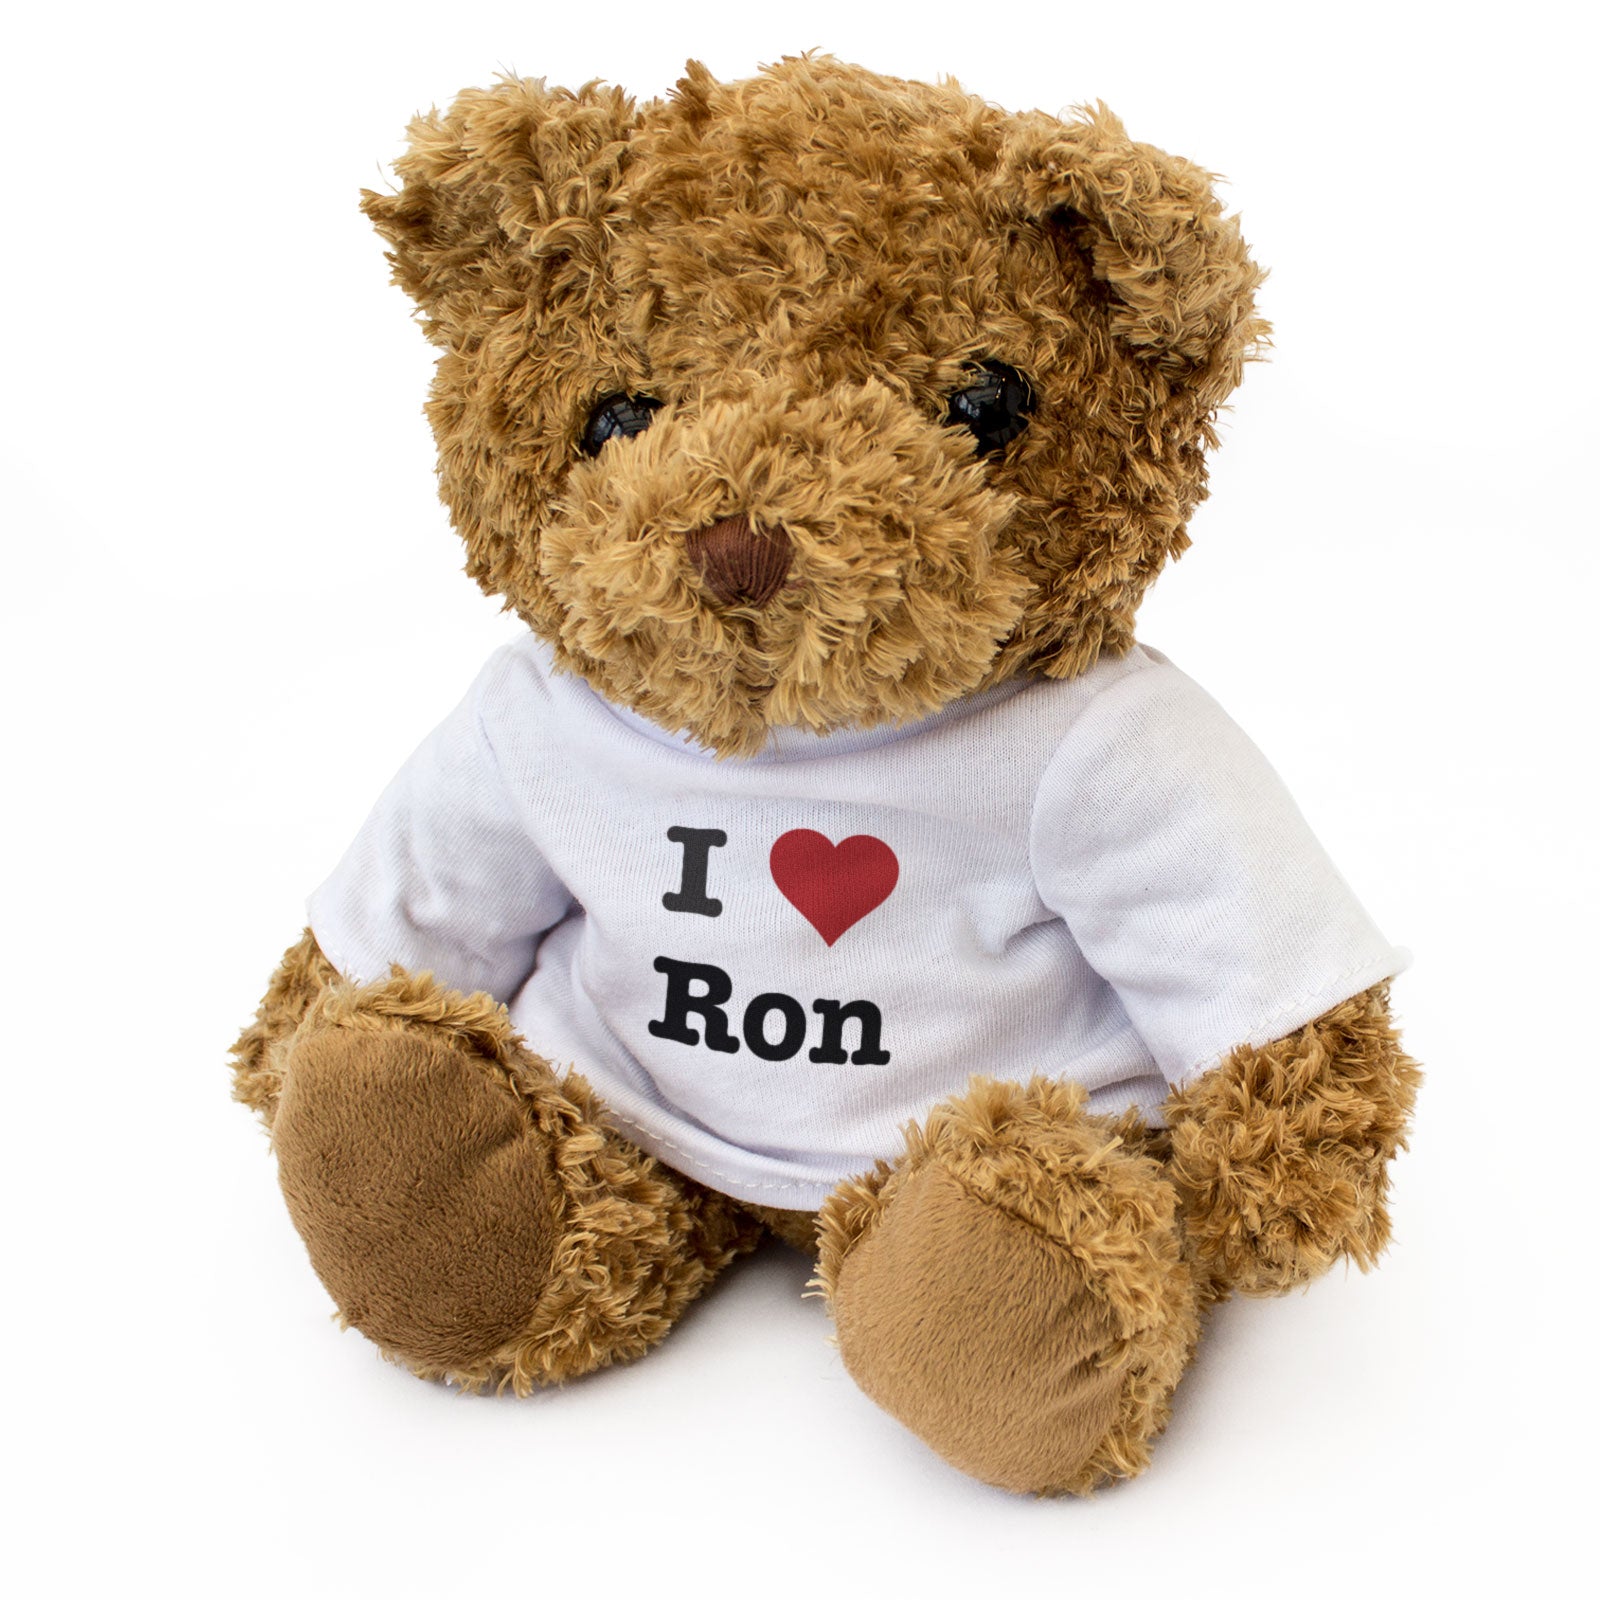 I Love Ron - Teddy Bear